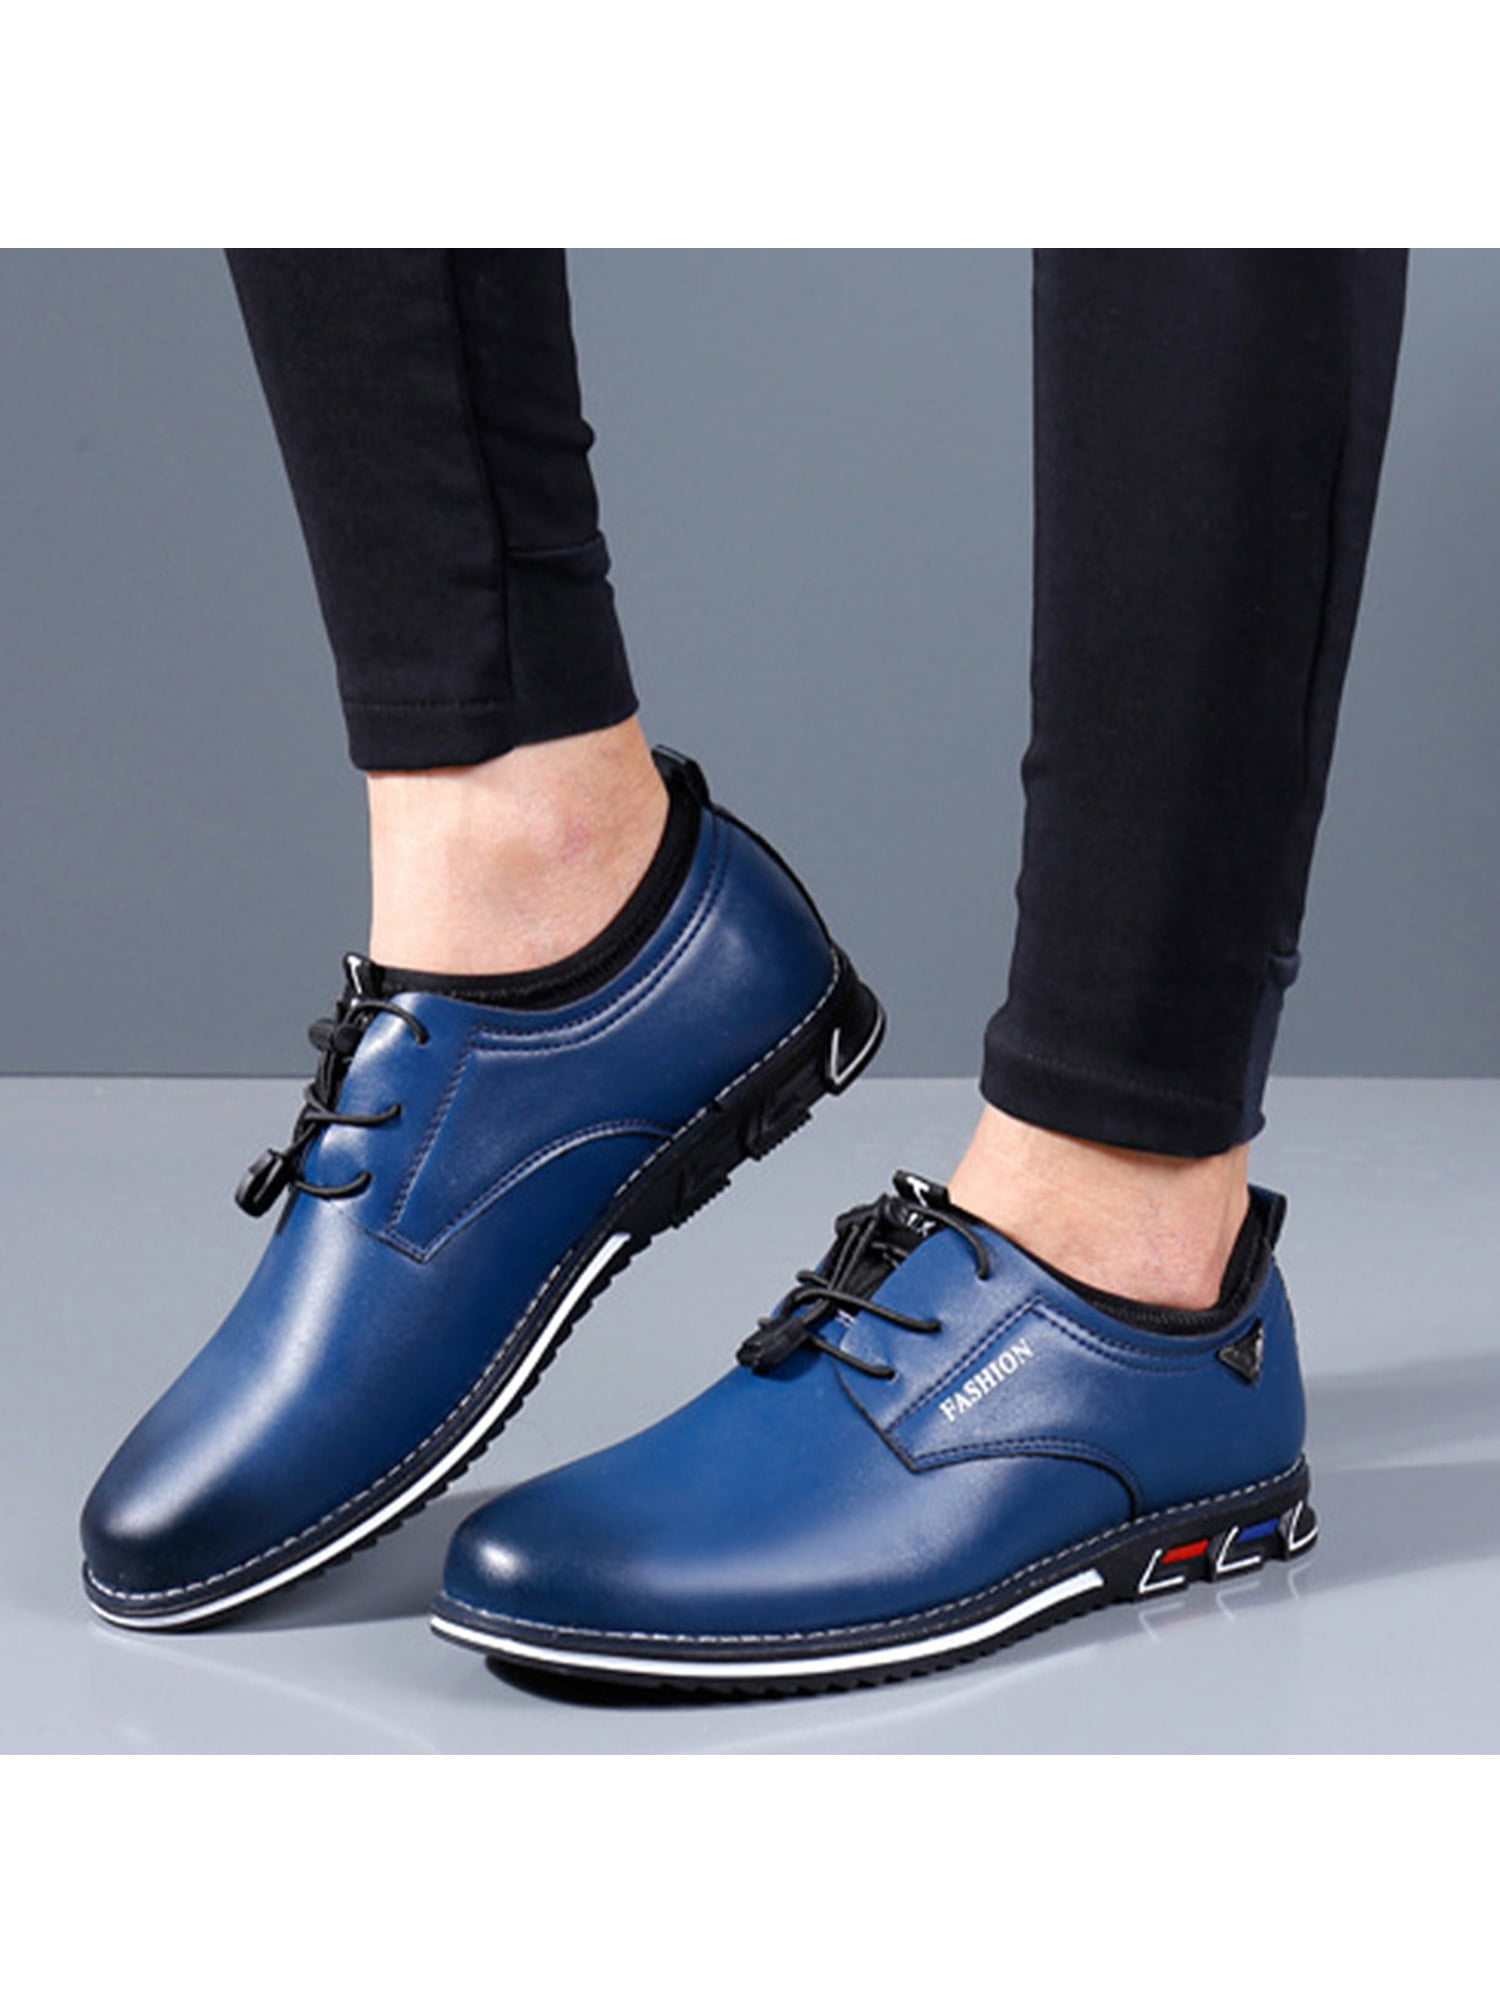 New Large Size Metal Toe 6.5cm High Heels Men's Business Party Shoes  Zapatos De Hombre Gradient Blue Gold Leather Shoes for Men | Wish